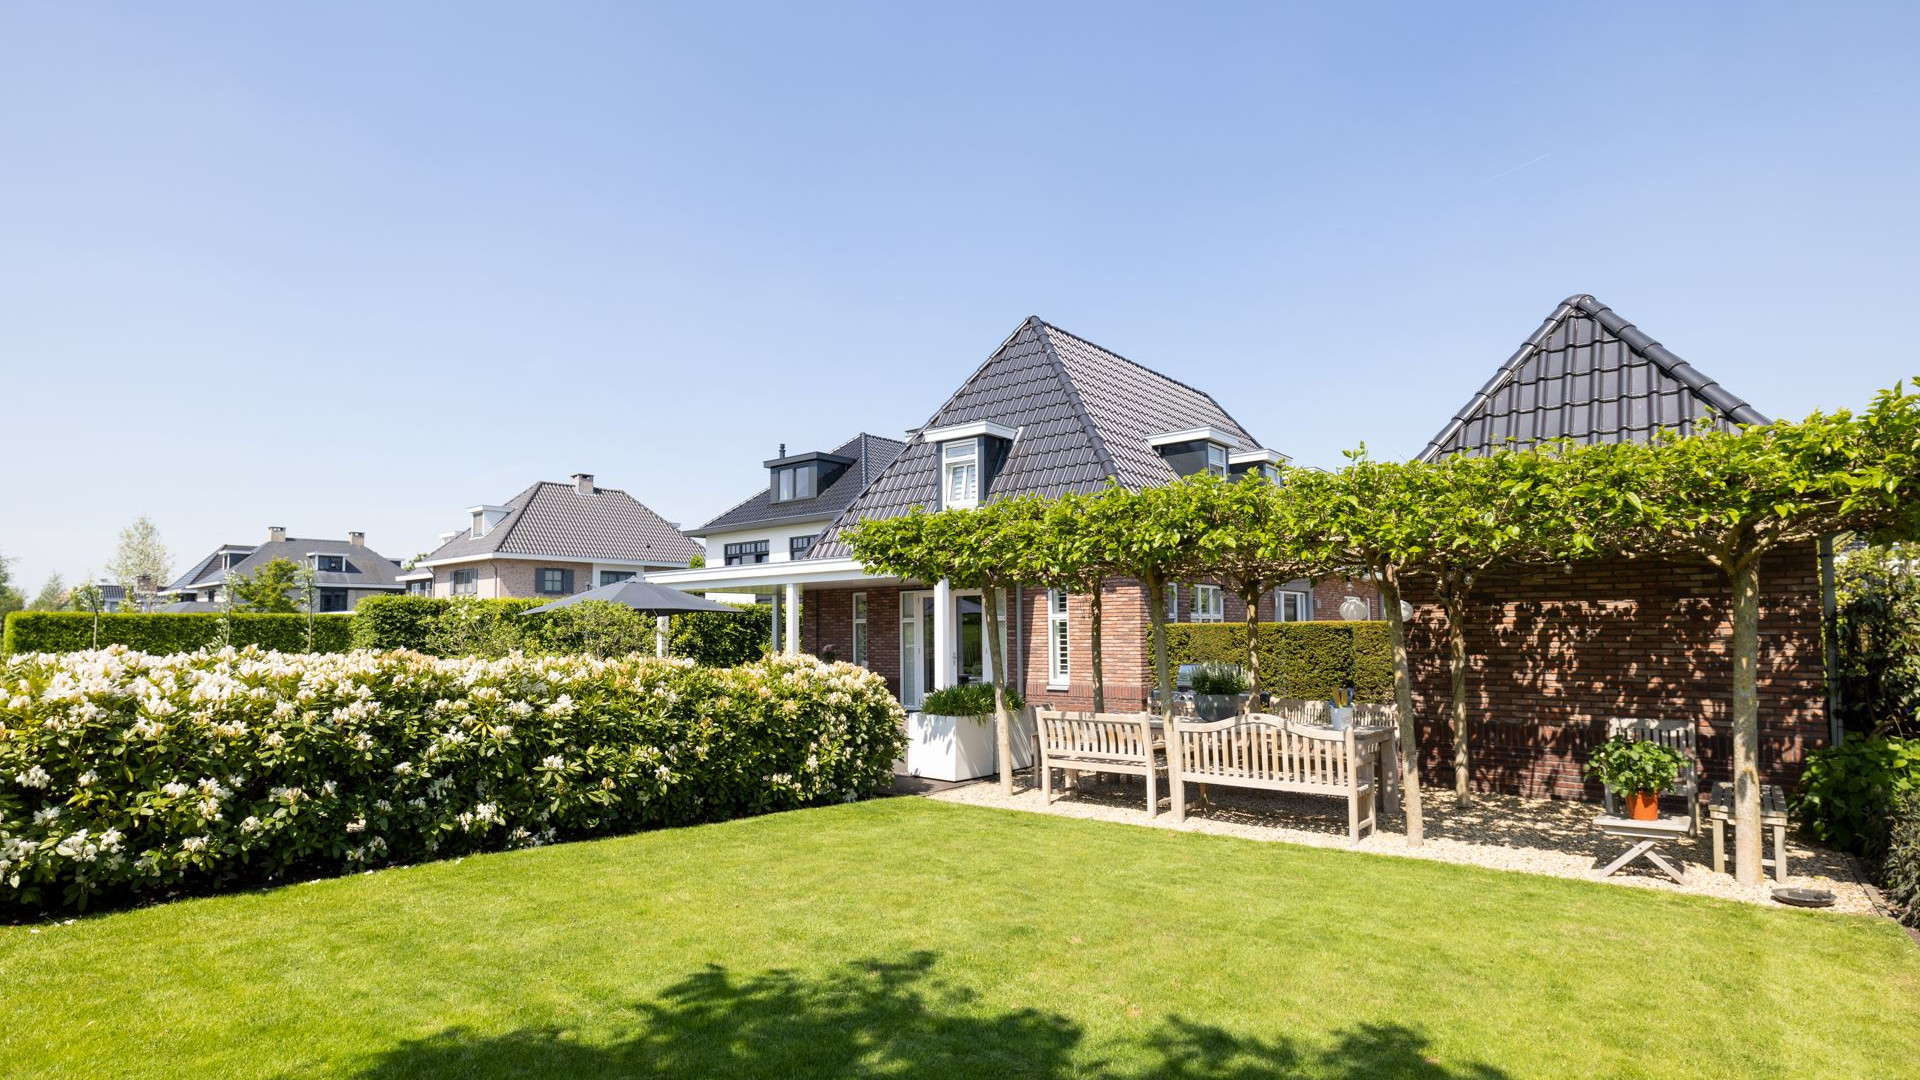 Keeper van Feijenoord koopt miljoenen villa in Berkel en Rodenrijs. Zie foto's 24